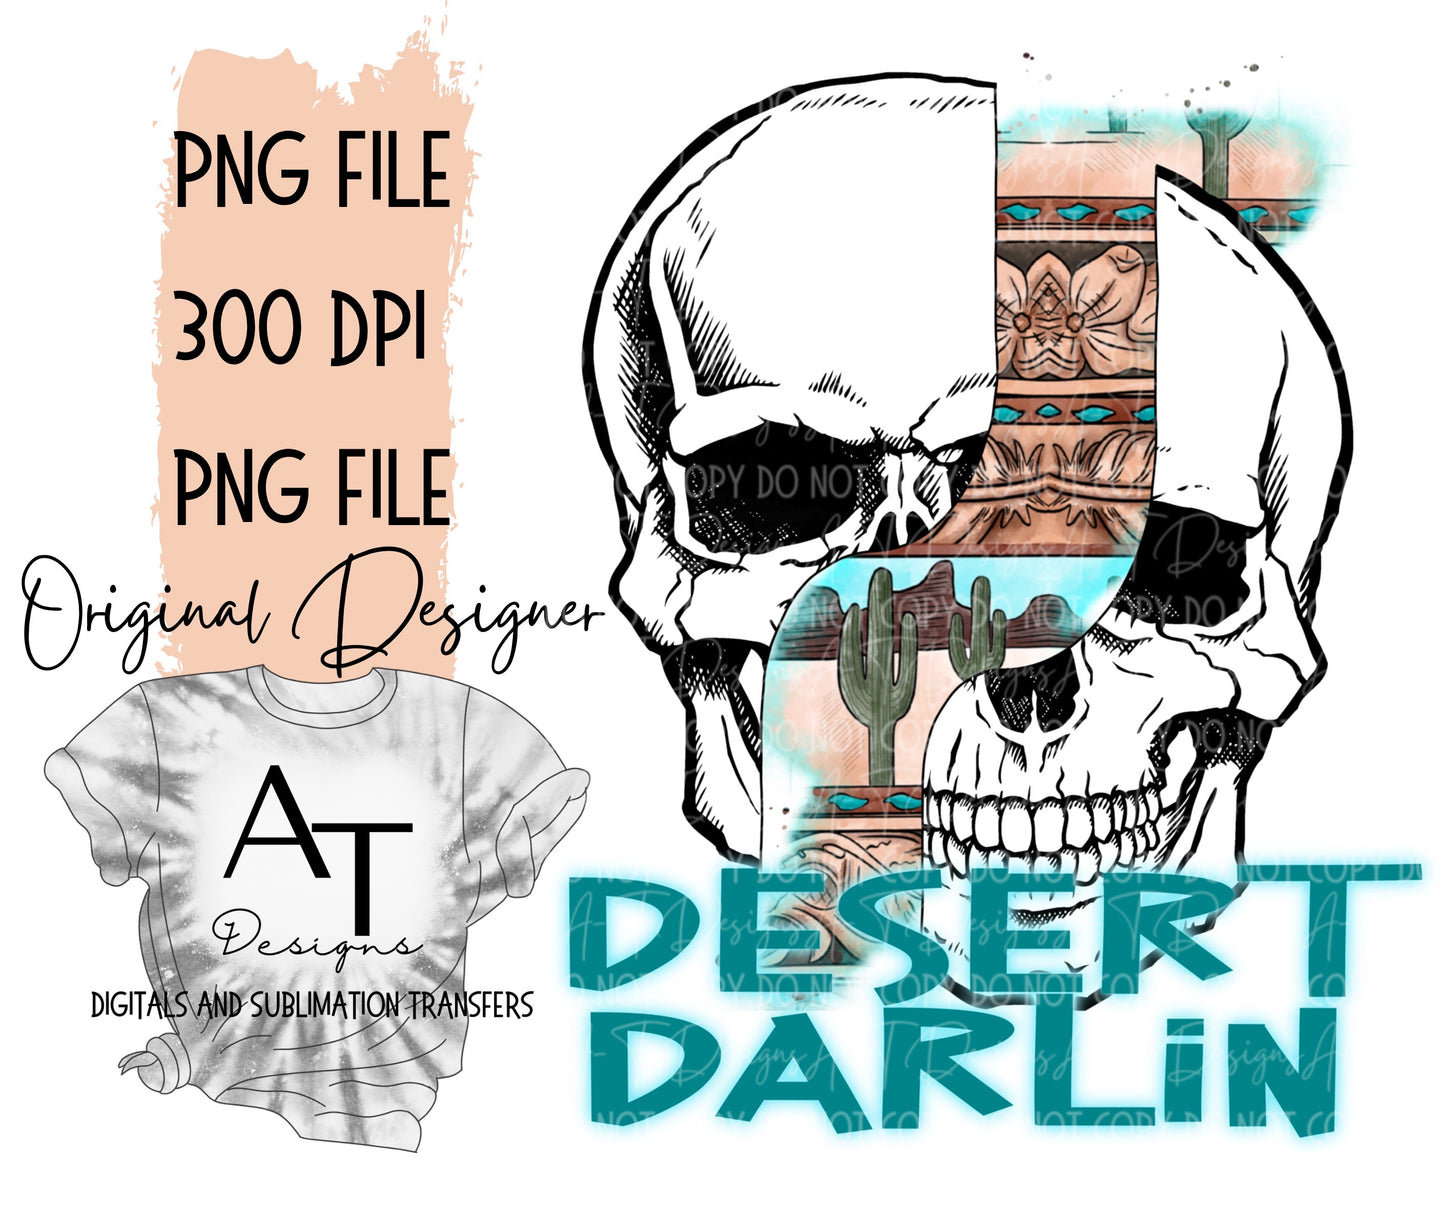 Desert Darlin Blue